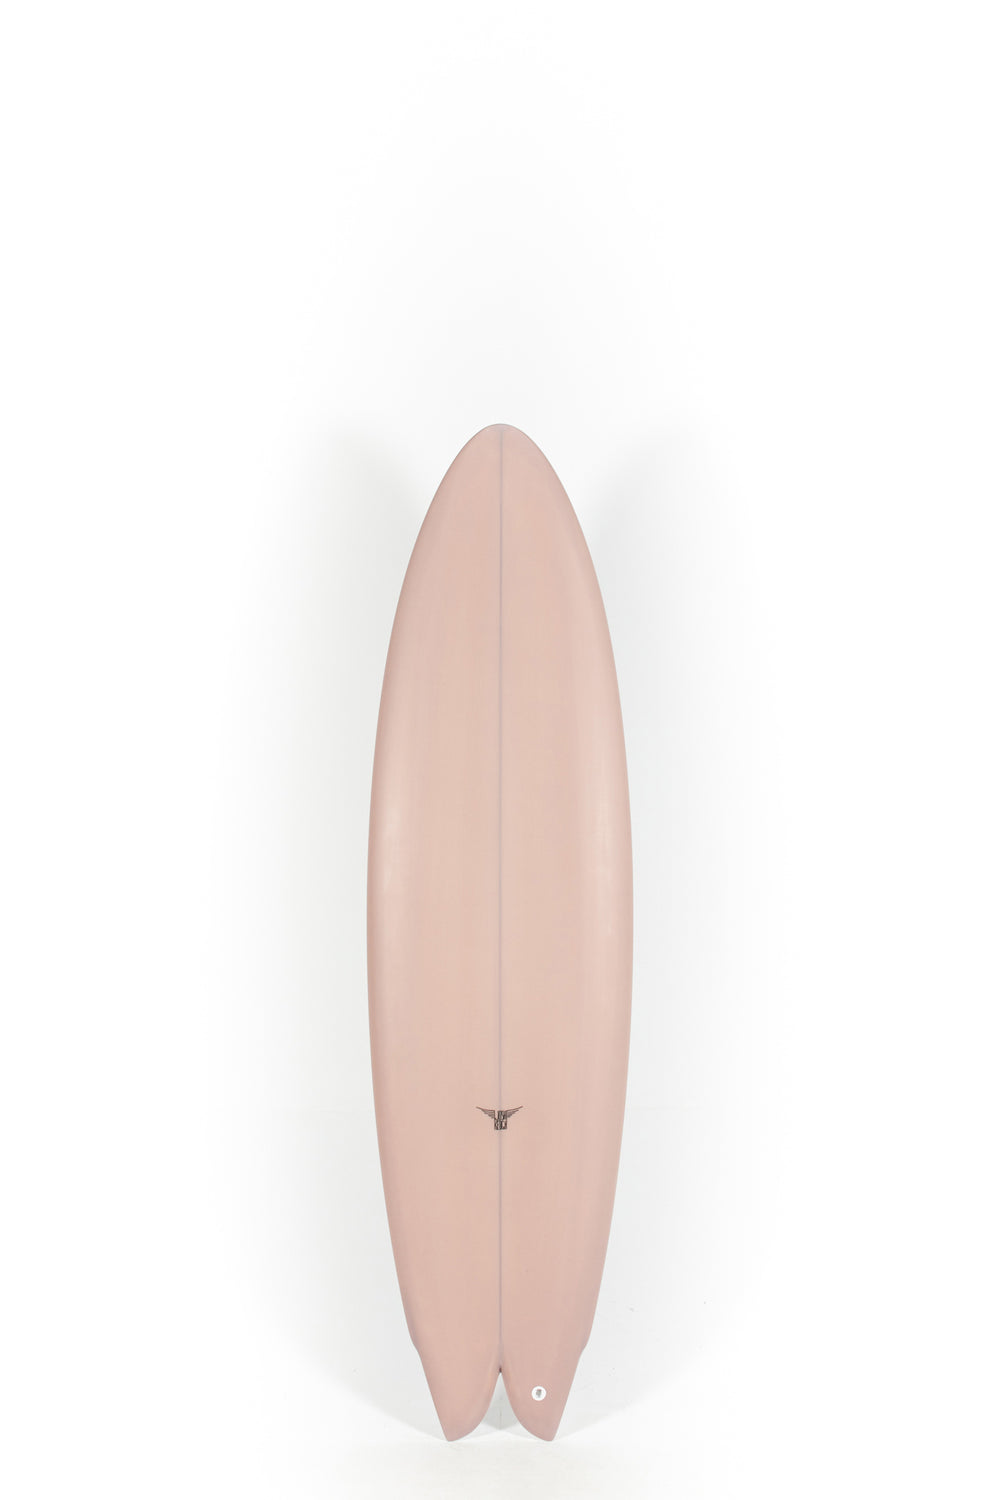 Pukas Surf Shop - Joshua Keogh Surfboard - M2 FLAT by Joshua Keogh - 6'4